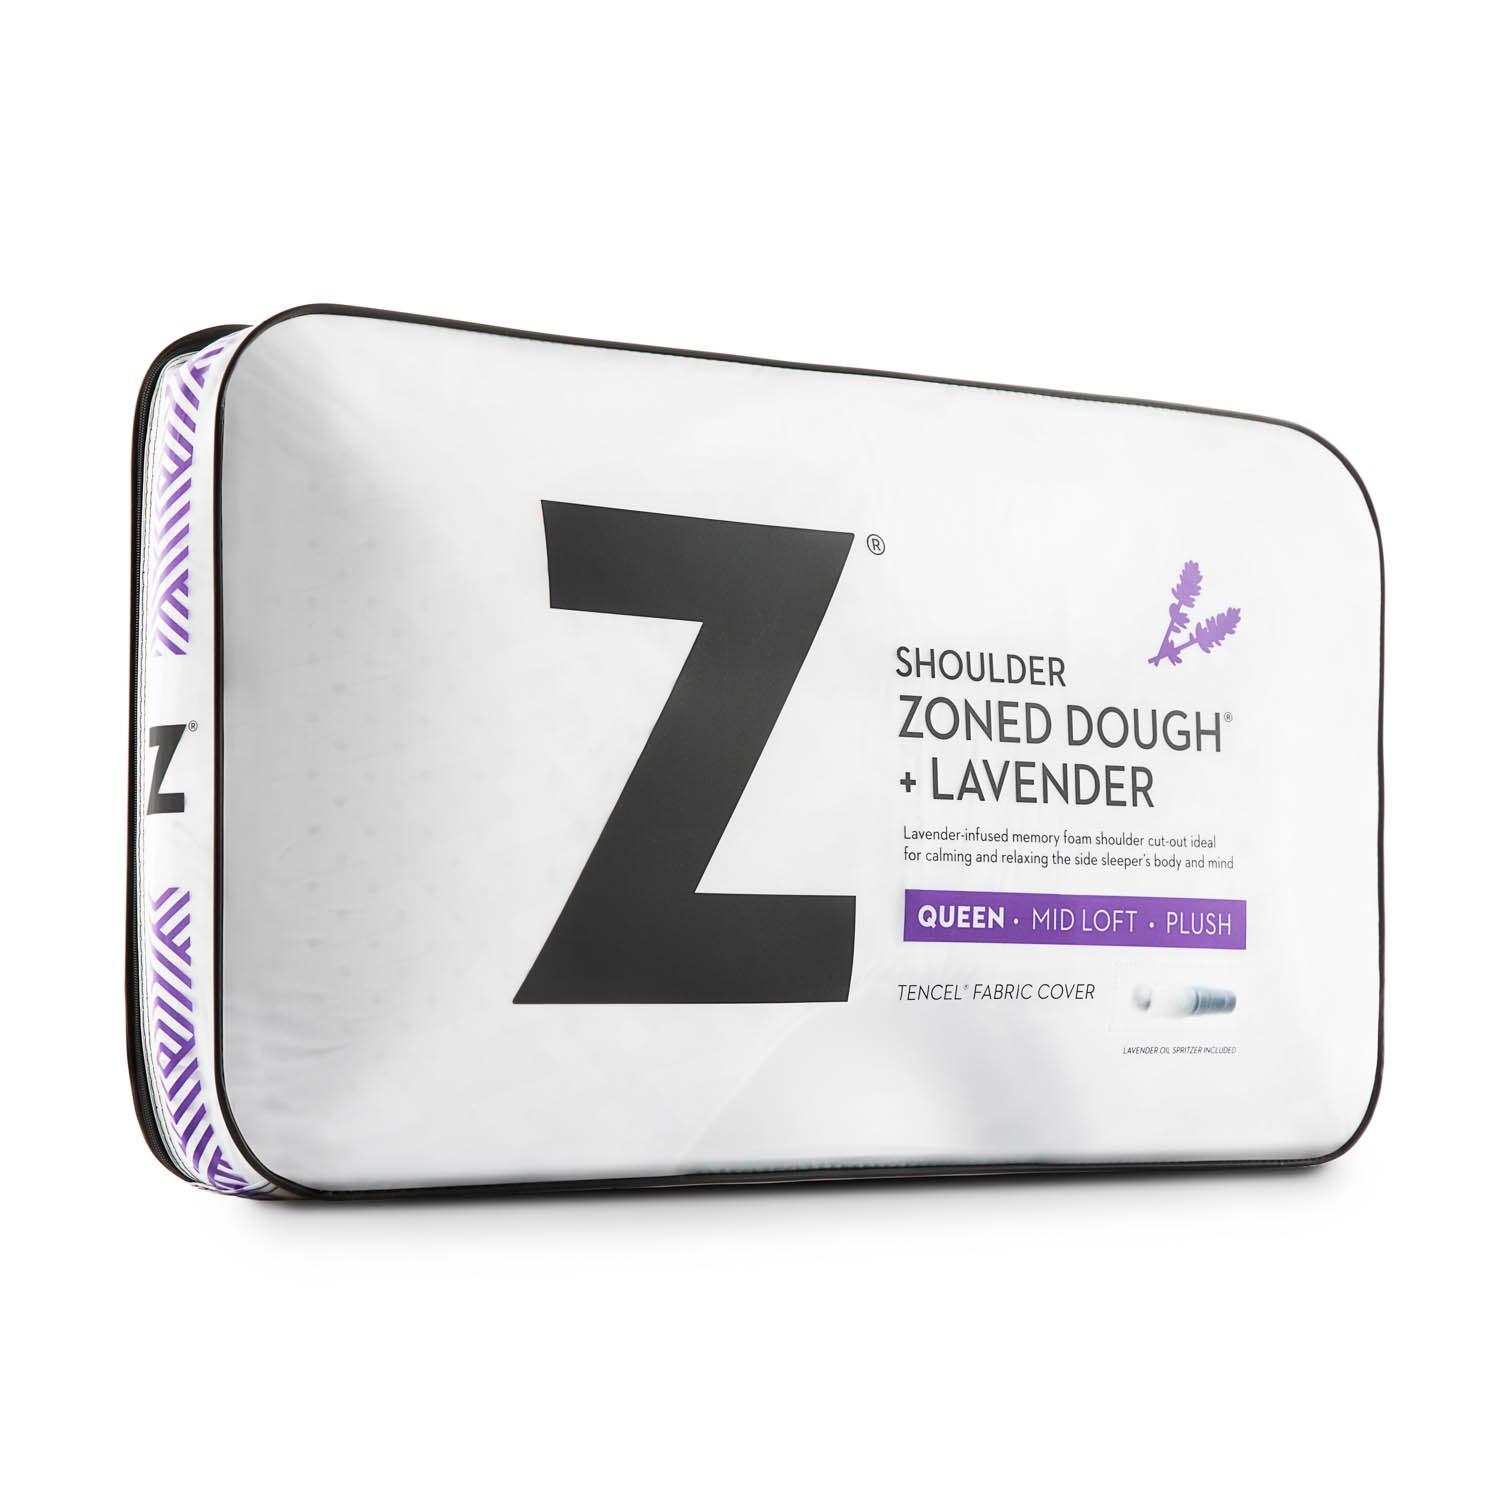 Shoulder Zoned Dough? Lavender